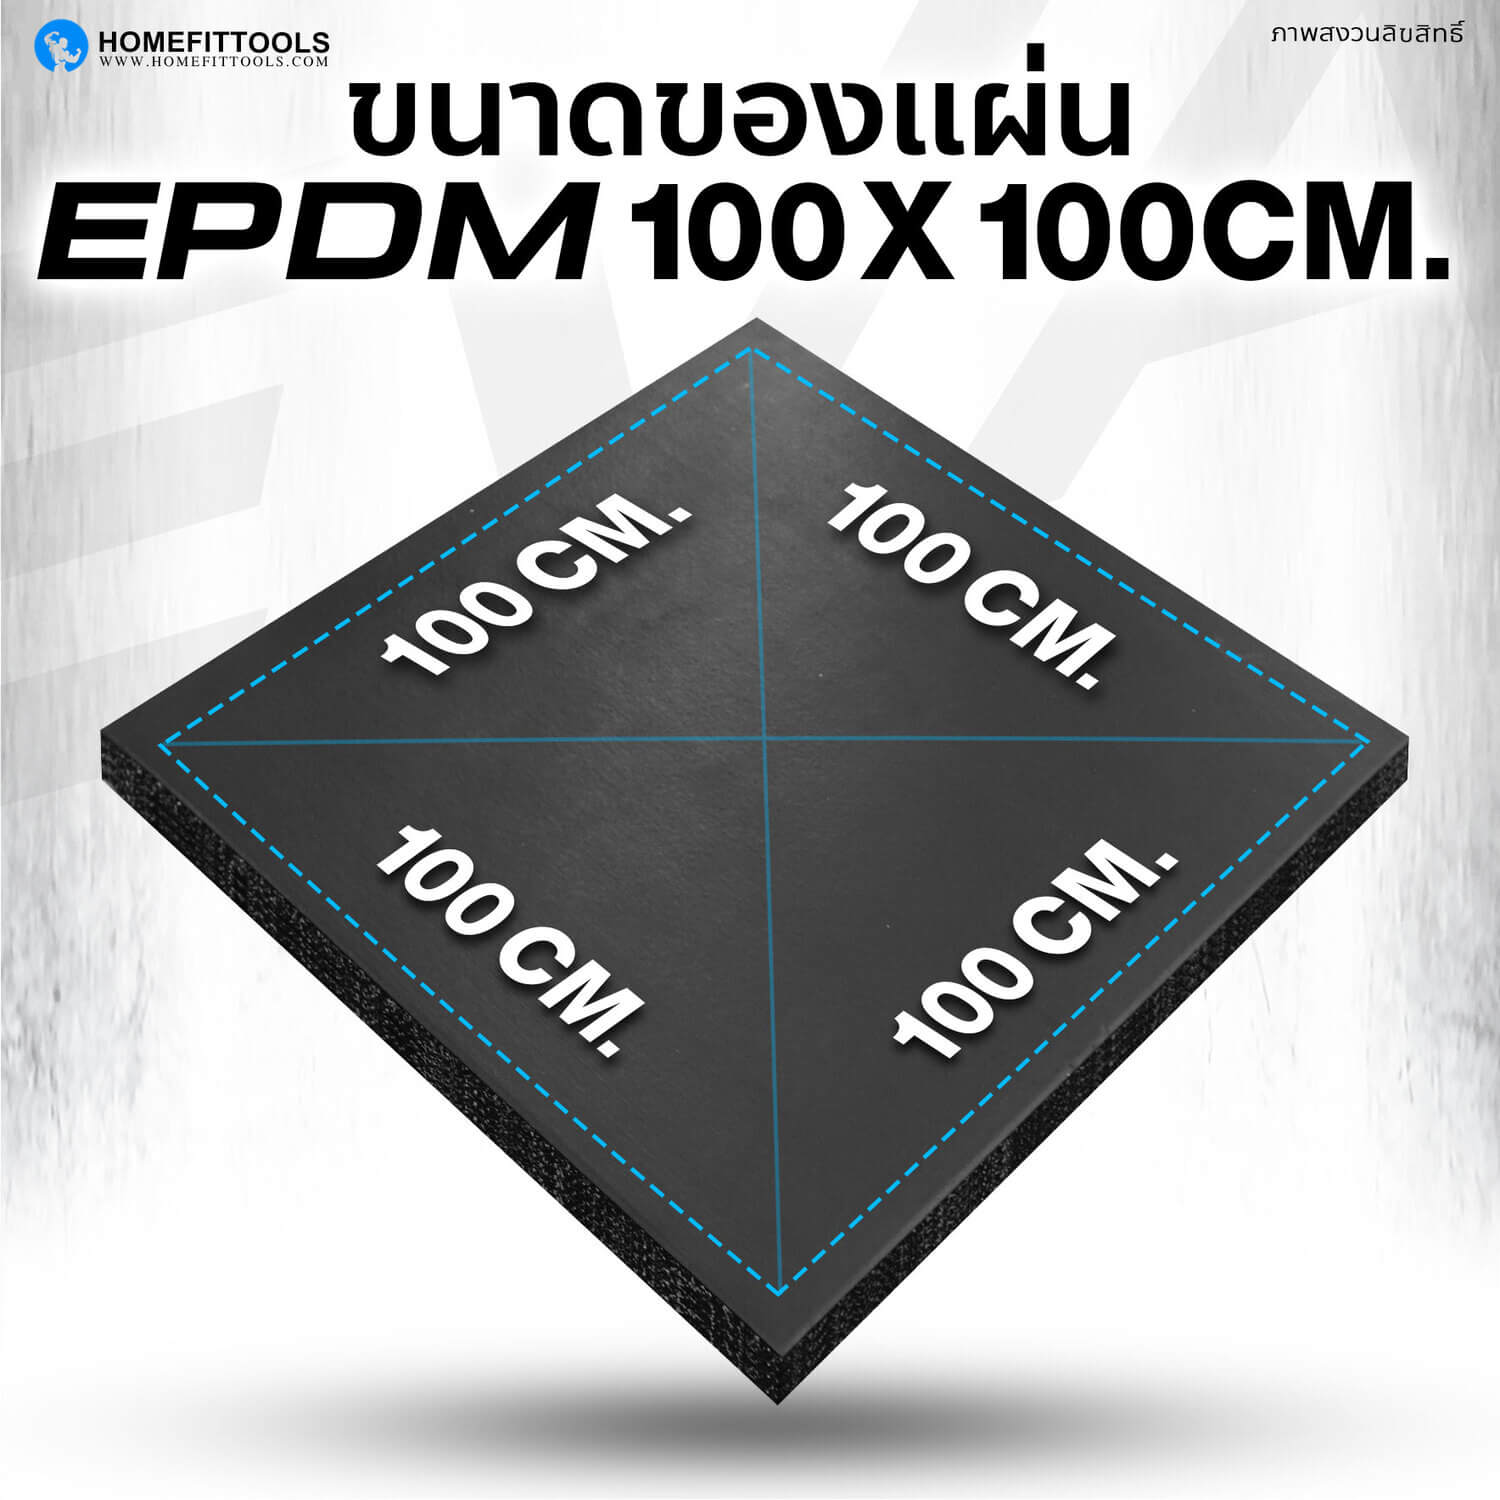 แผ่นรองปูพื้น Rubber Tile P-1 EPDM ขนาด 100x100 ซม.